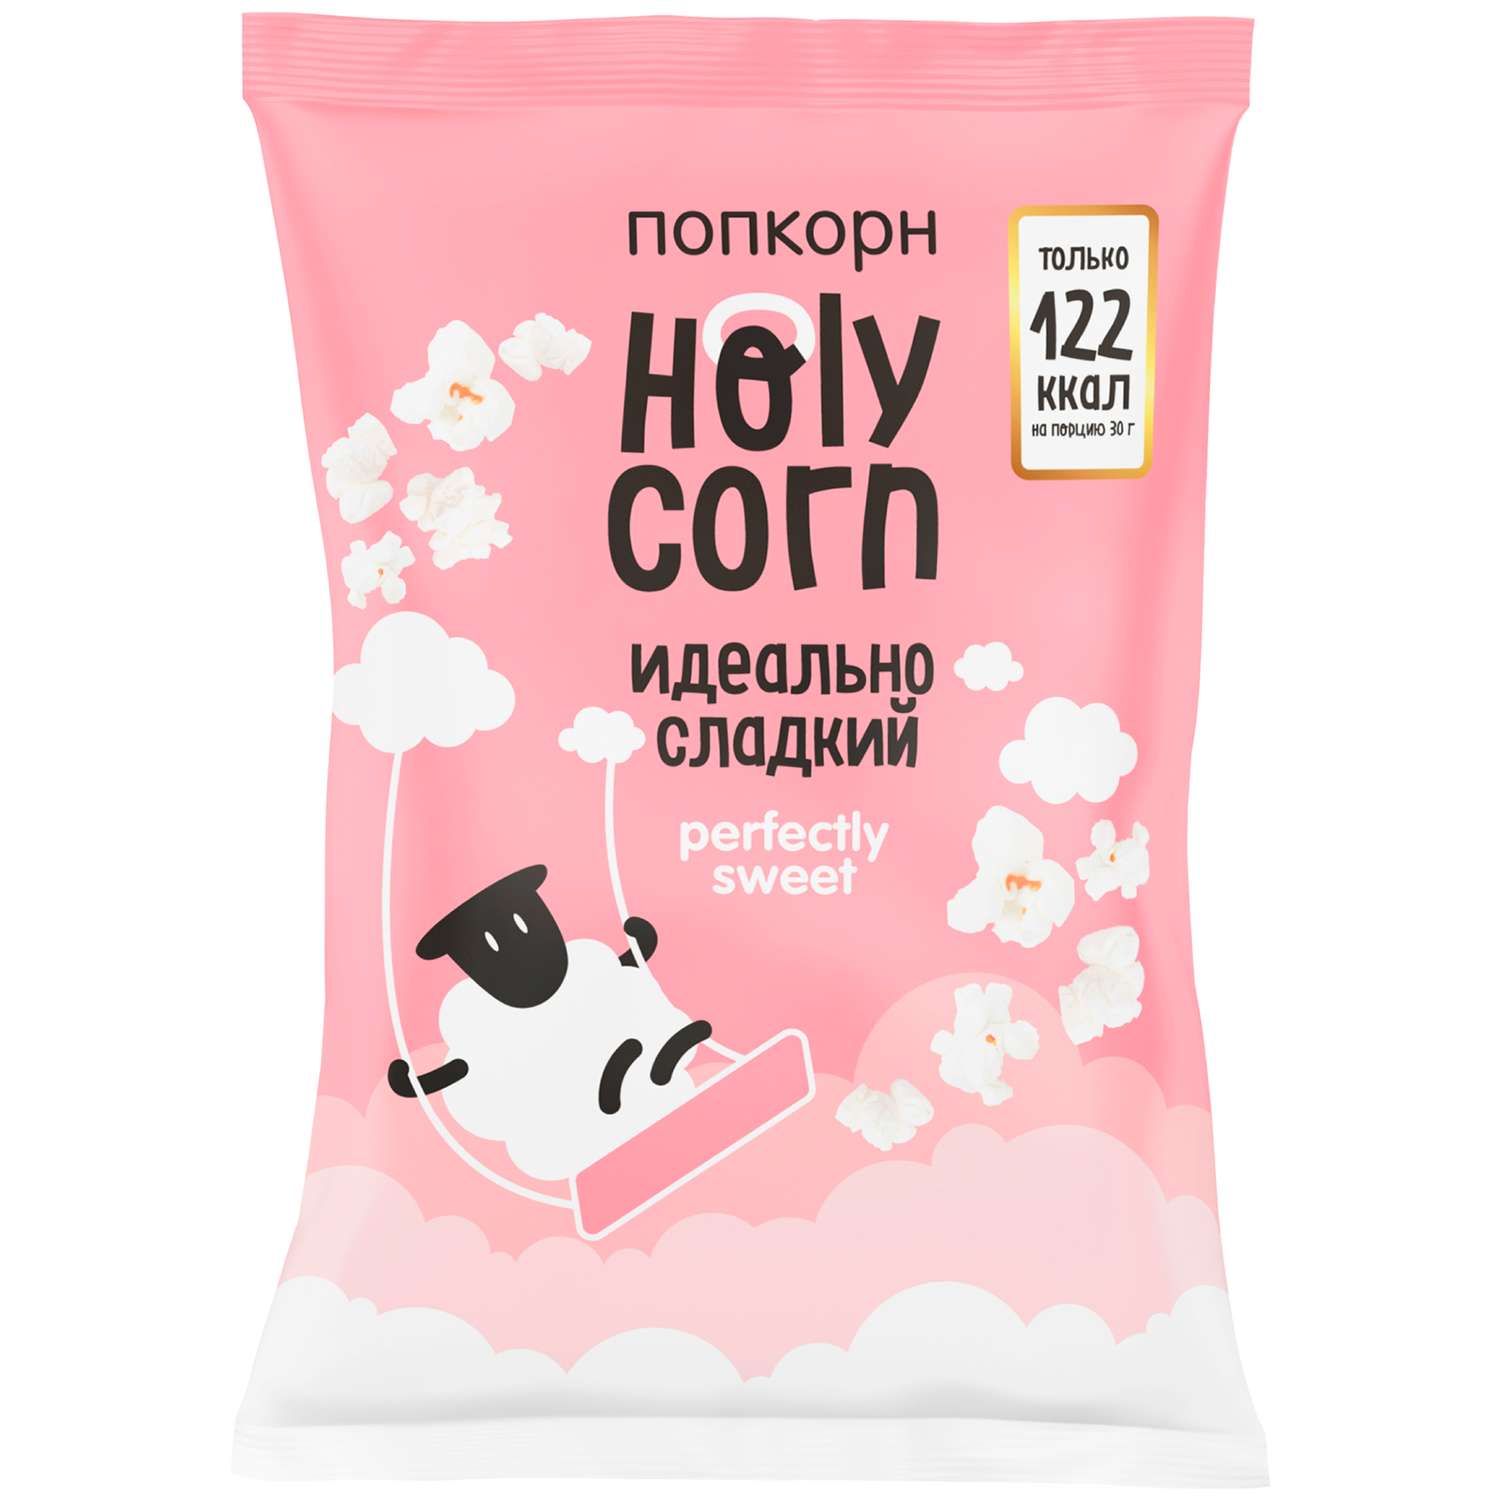 Попкорн Holy Corn идеально сладкий 120г - фото 1